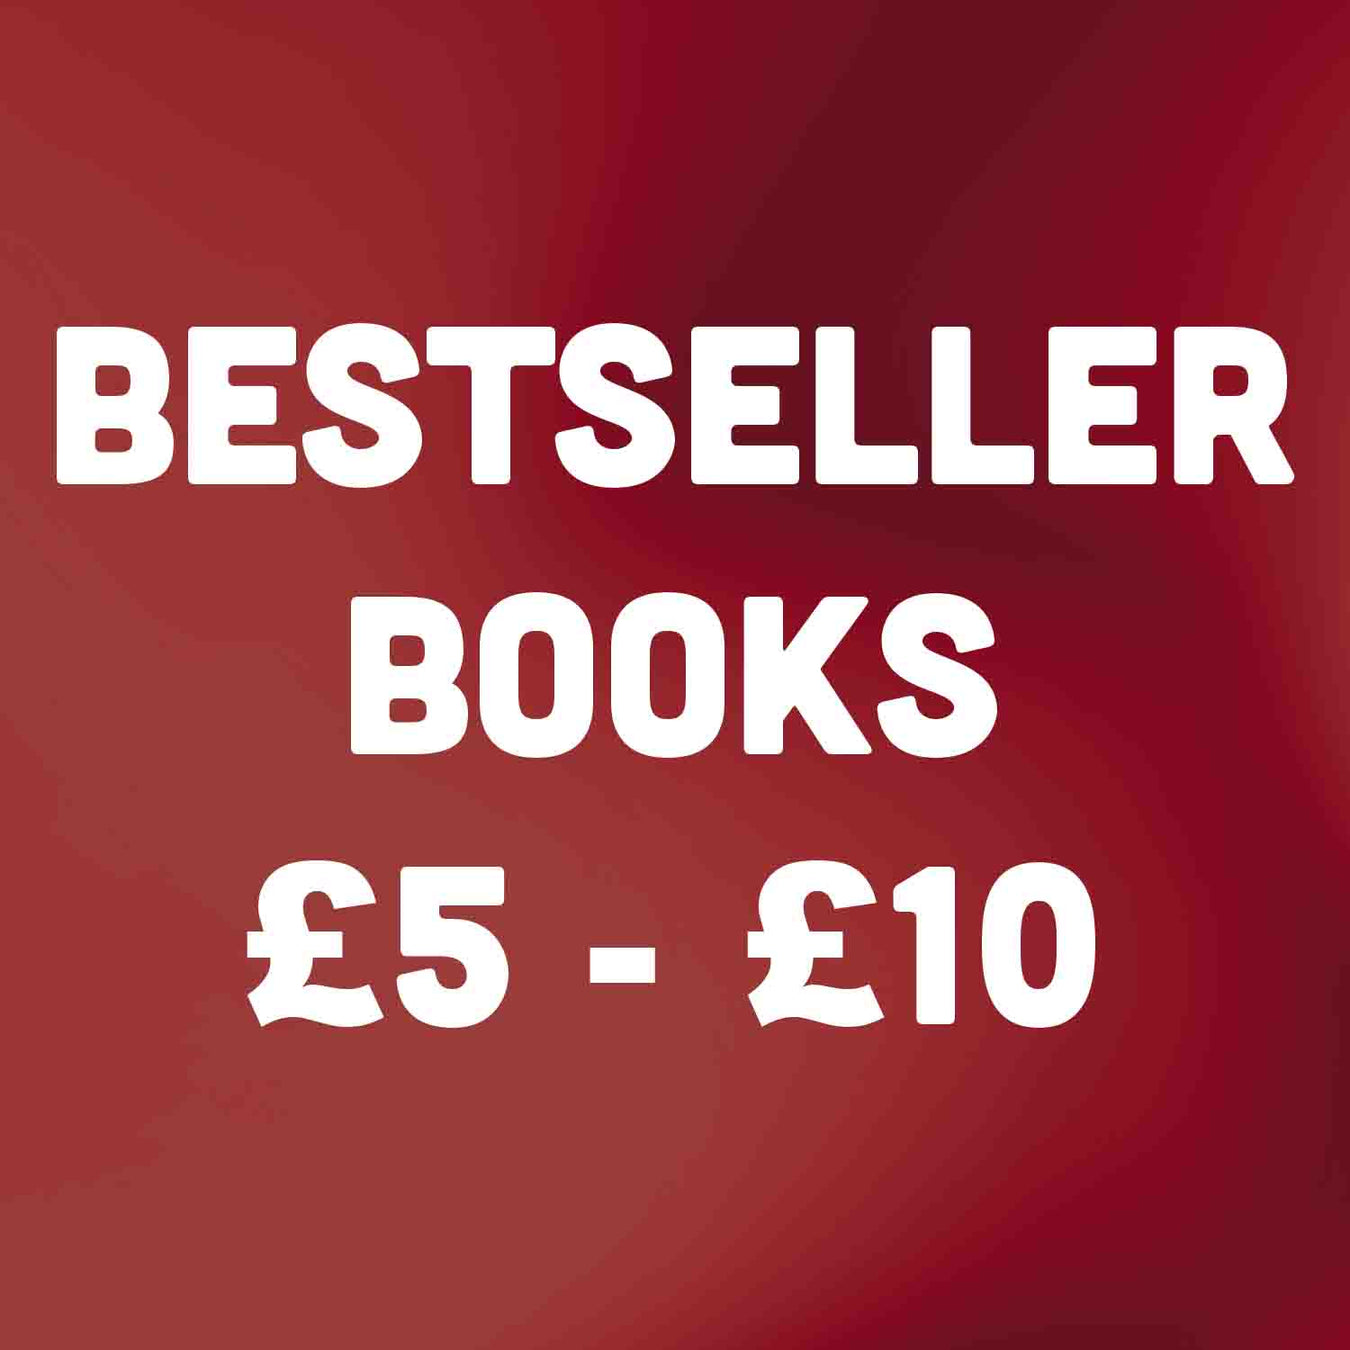 Bestseller Books £5 - £10